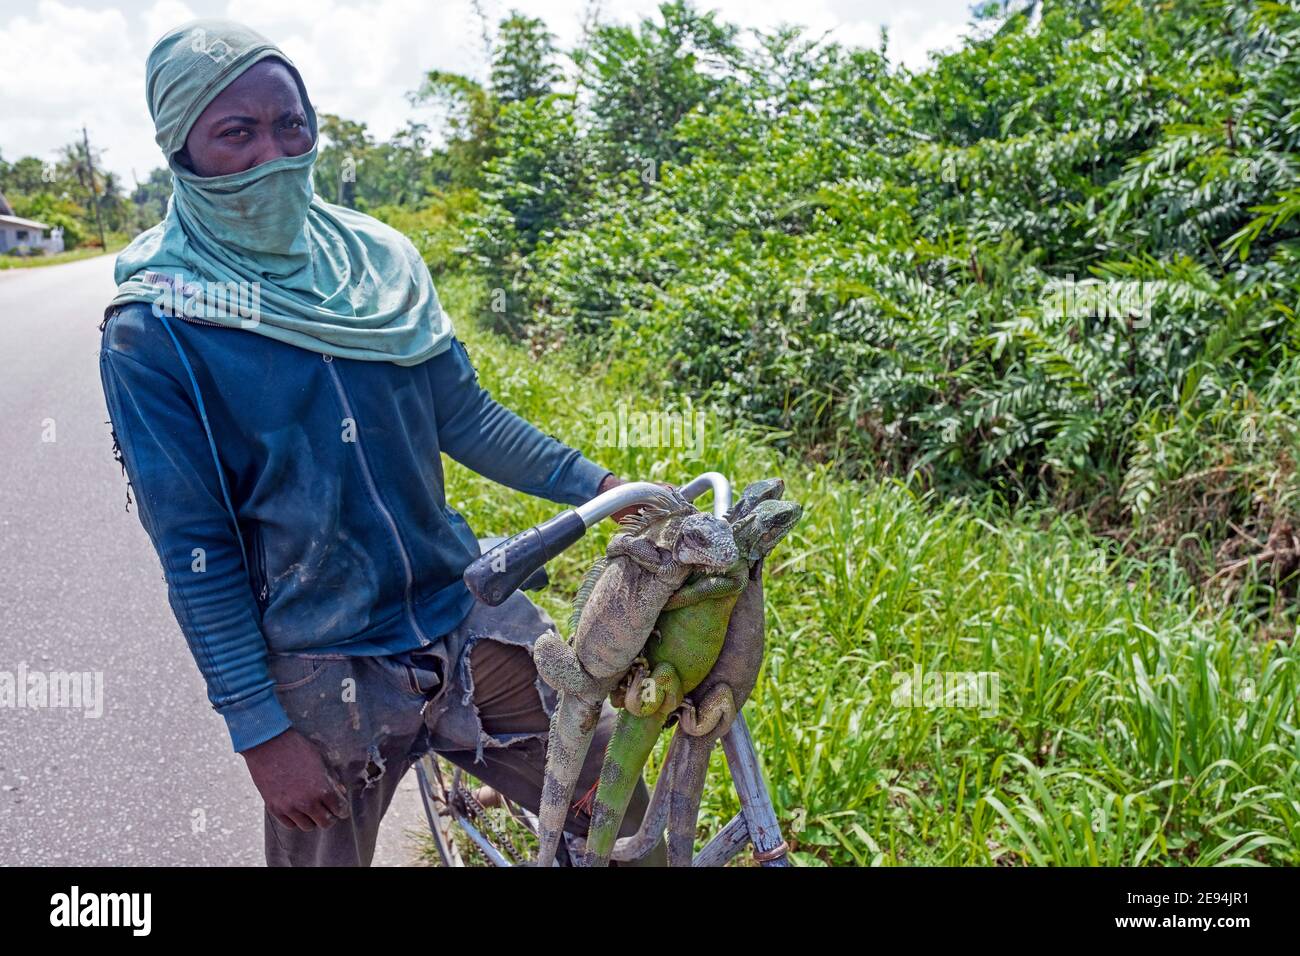 Uomo surinamese che mostra iguane verdi morte (Iguana iguana) appese dalla sua bicicletta, ucciso per la carne come fonte di cibo in Suriname / Surinam Foto Stock